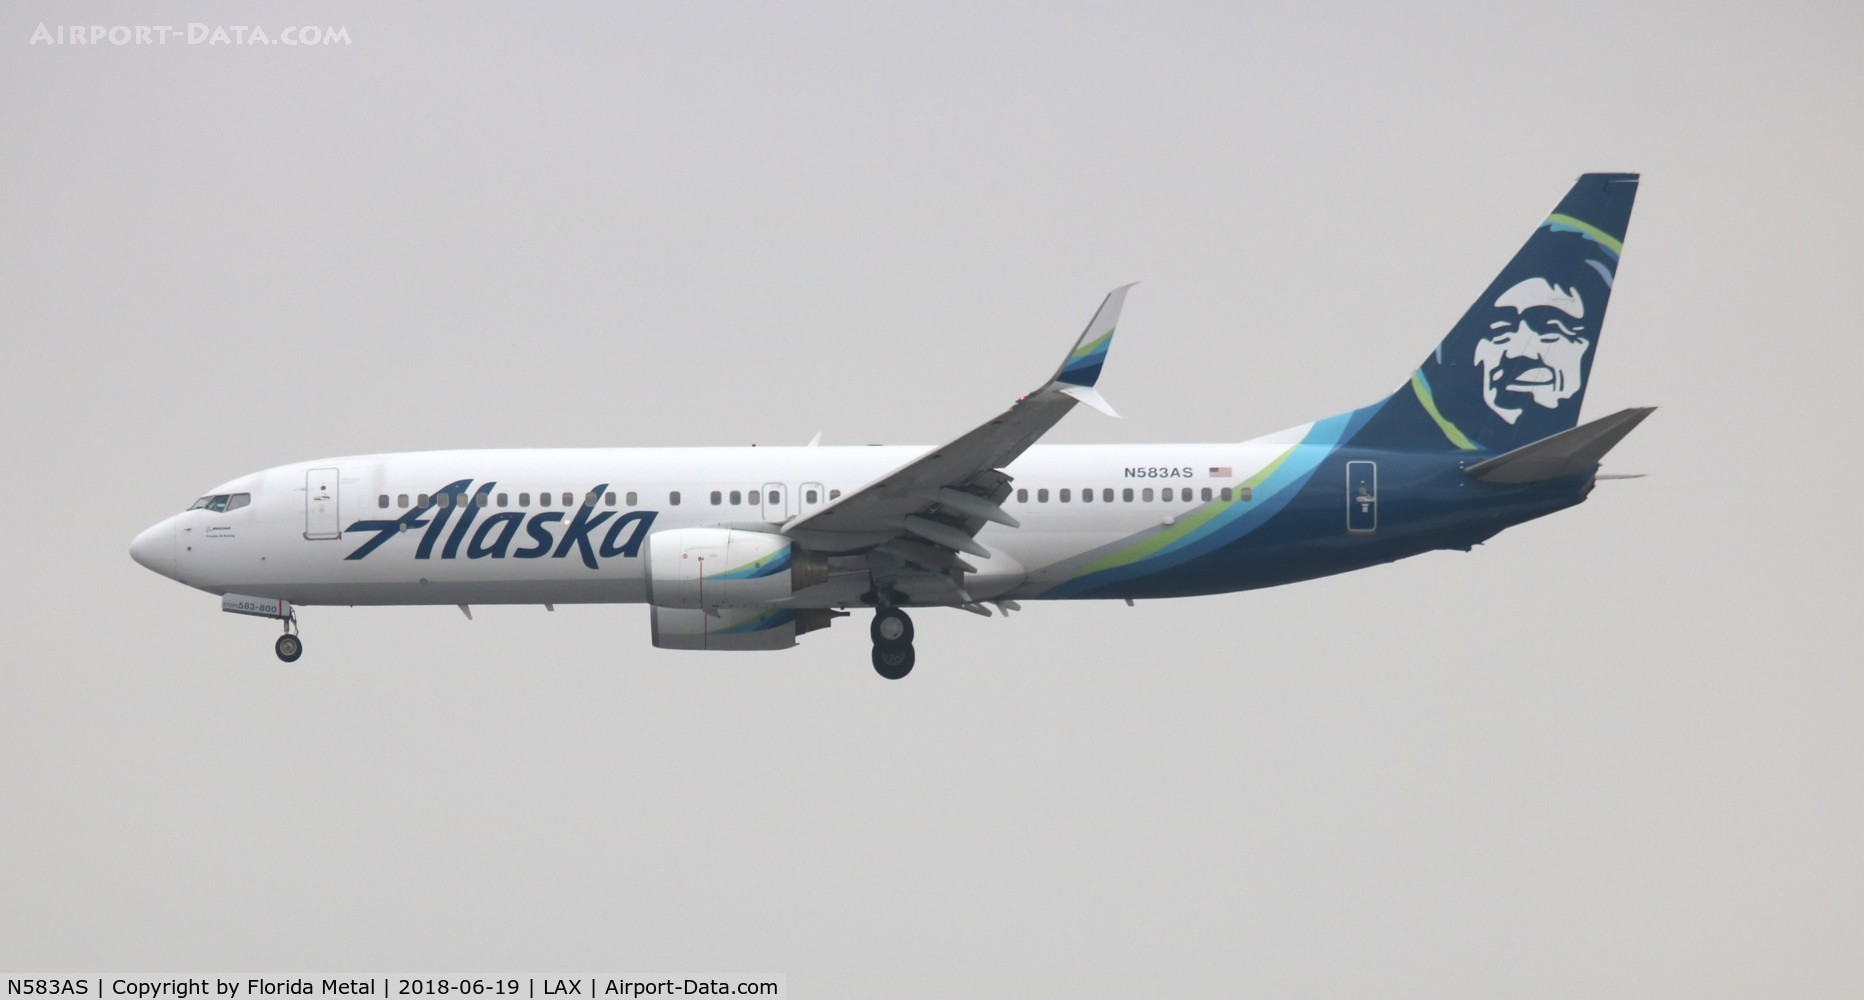 N583AS, 2007 Boeing 737-890 C/N 35681, Alaska